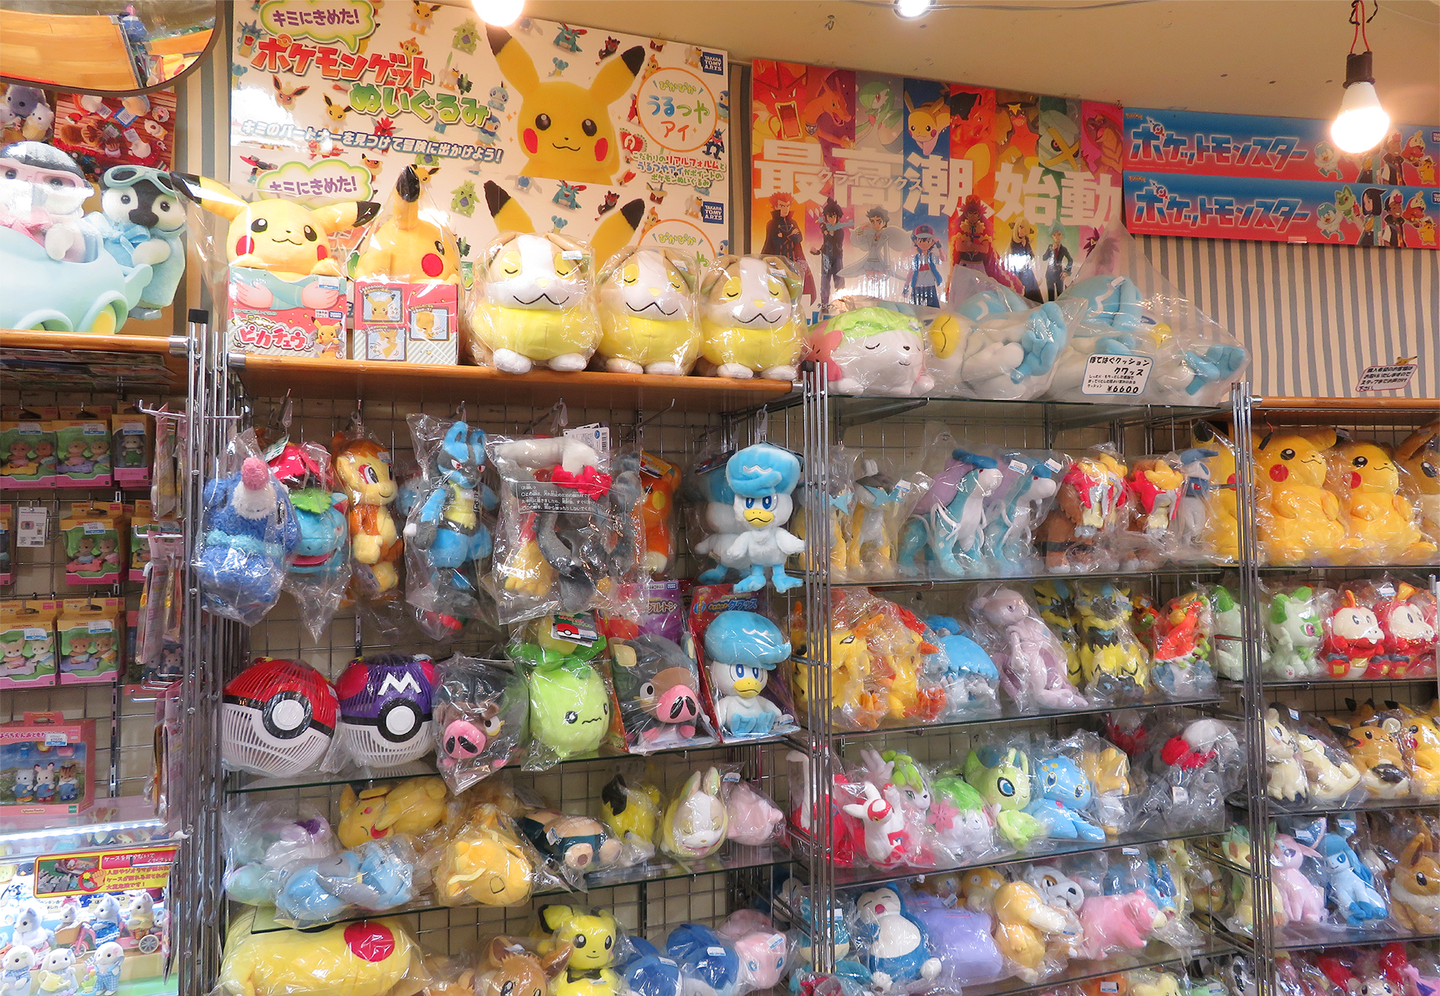 Images of POKEMON merchandise sold at YAMASHIROYA1